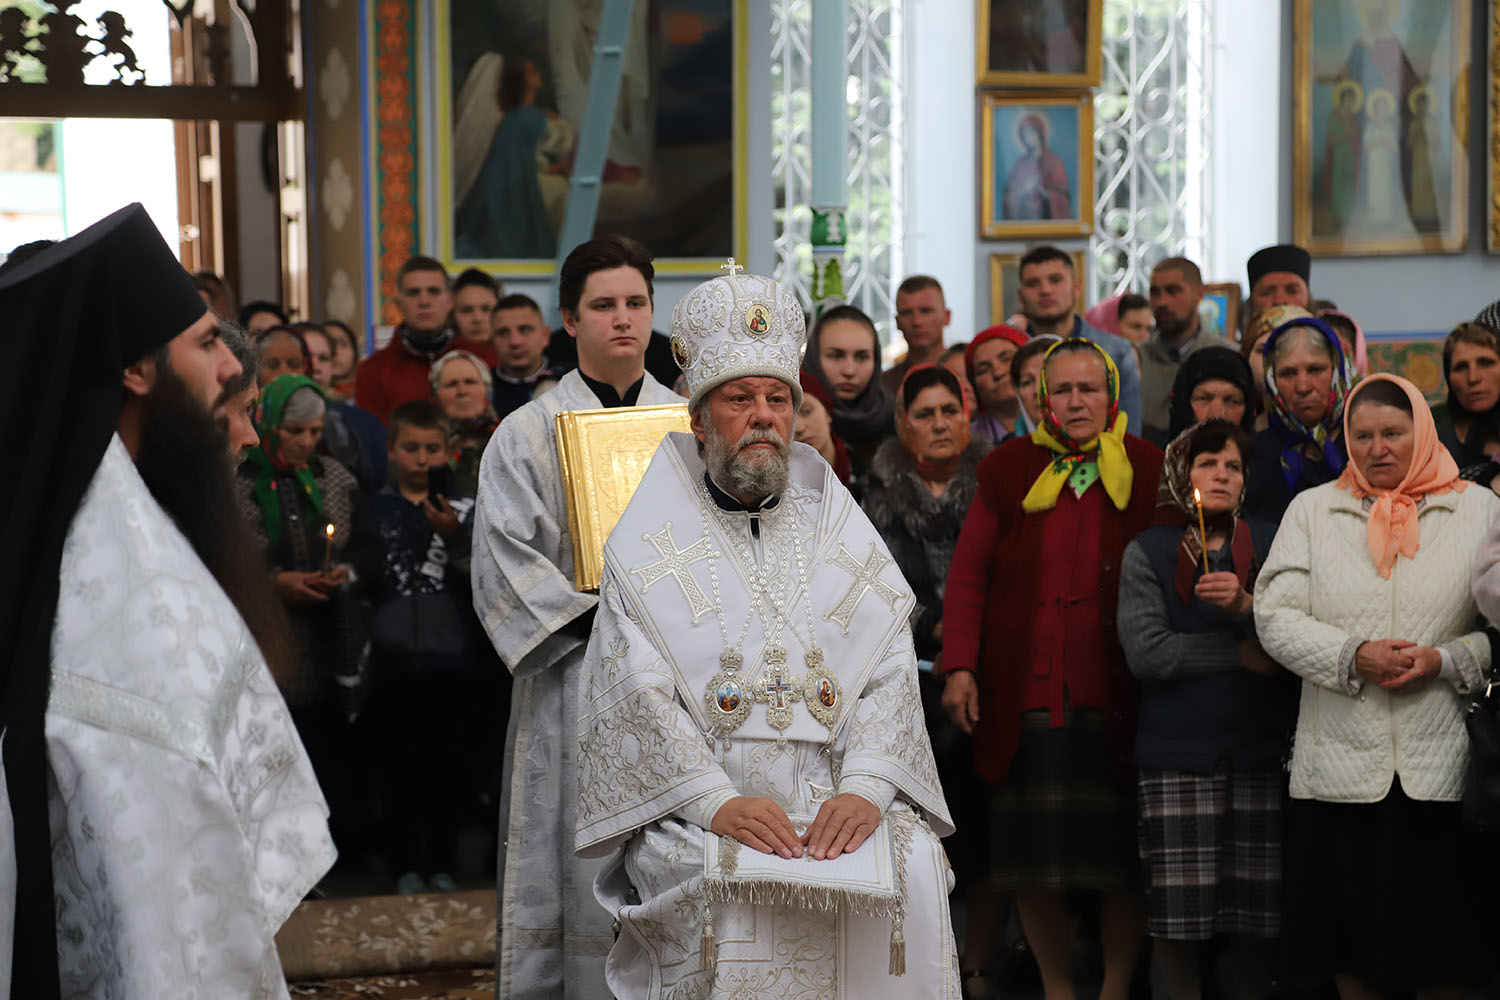 /FOTO/ Slujbă cu încălcări grave surprinsă la mănăstirea Japca din raionul Florești